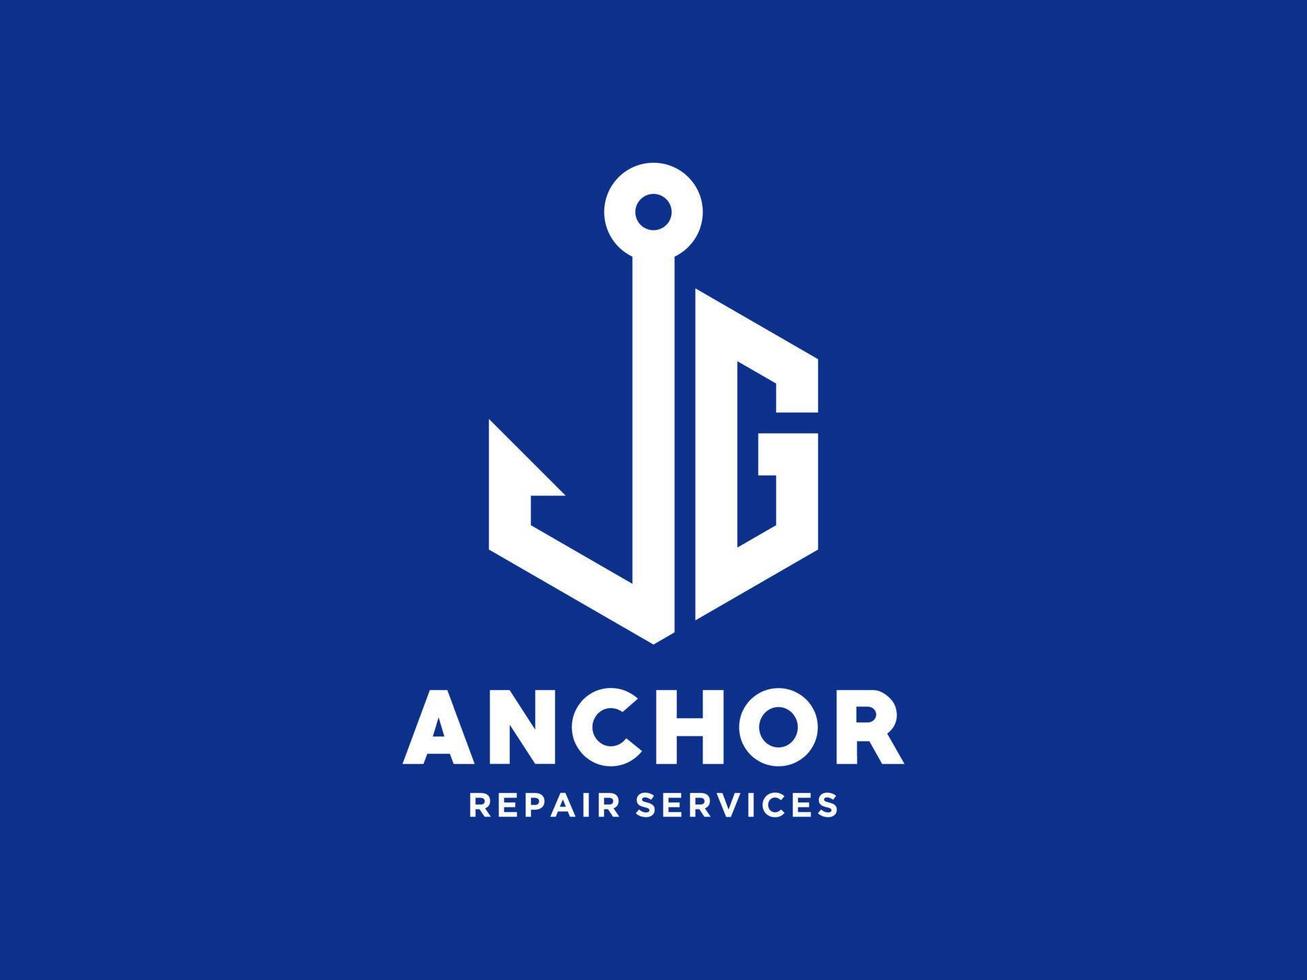 logo design g ancora alfabeto artistico per barca nave marina trasporto nautico vettore libero